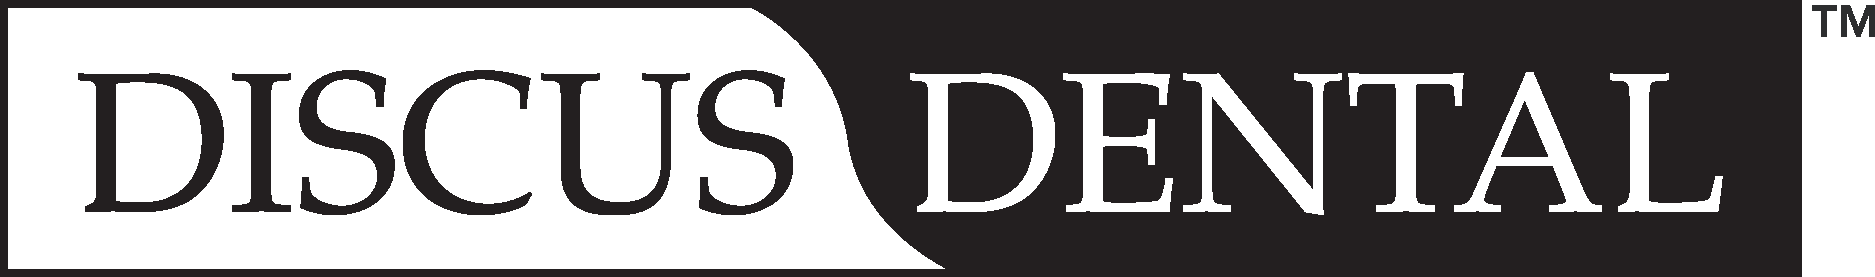 Discus Dental Logo Vector